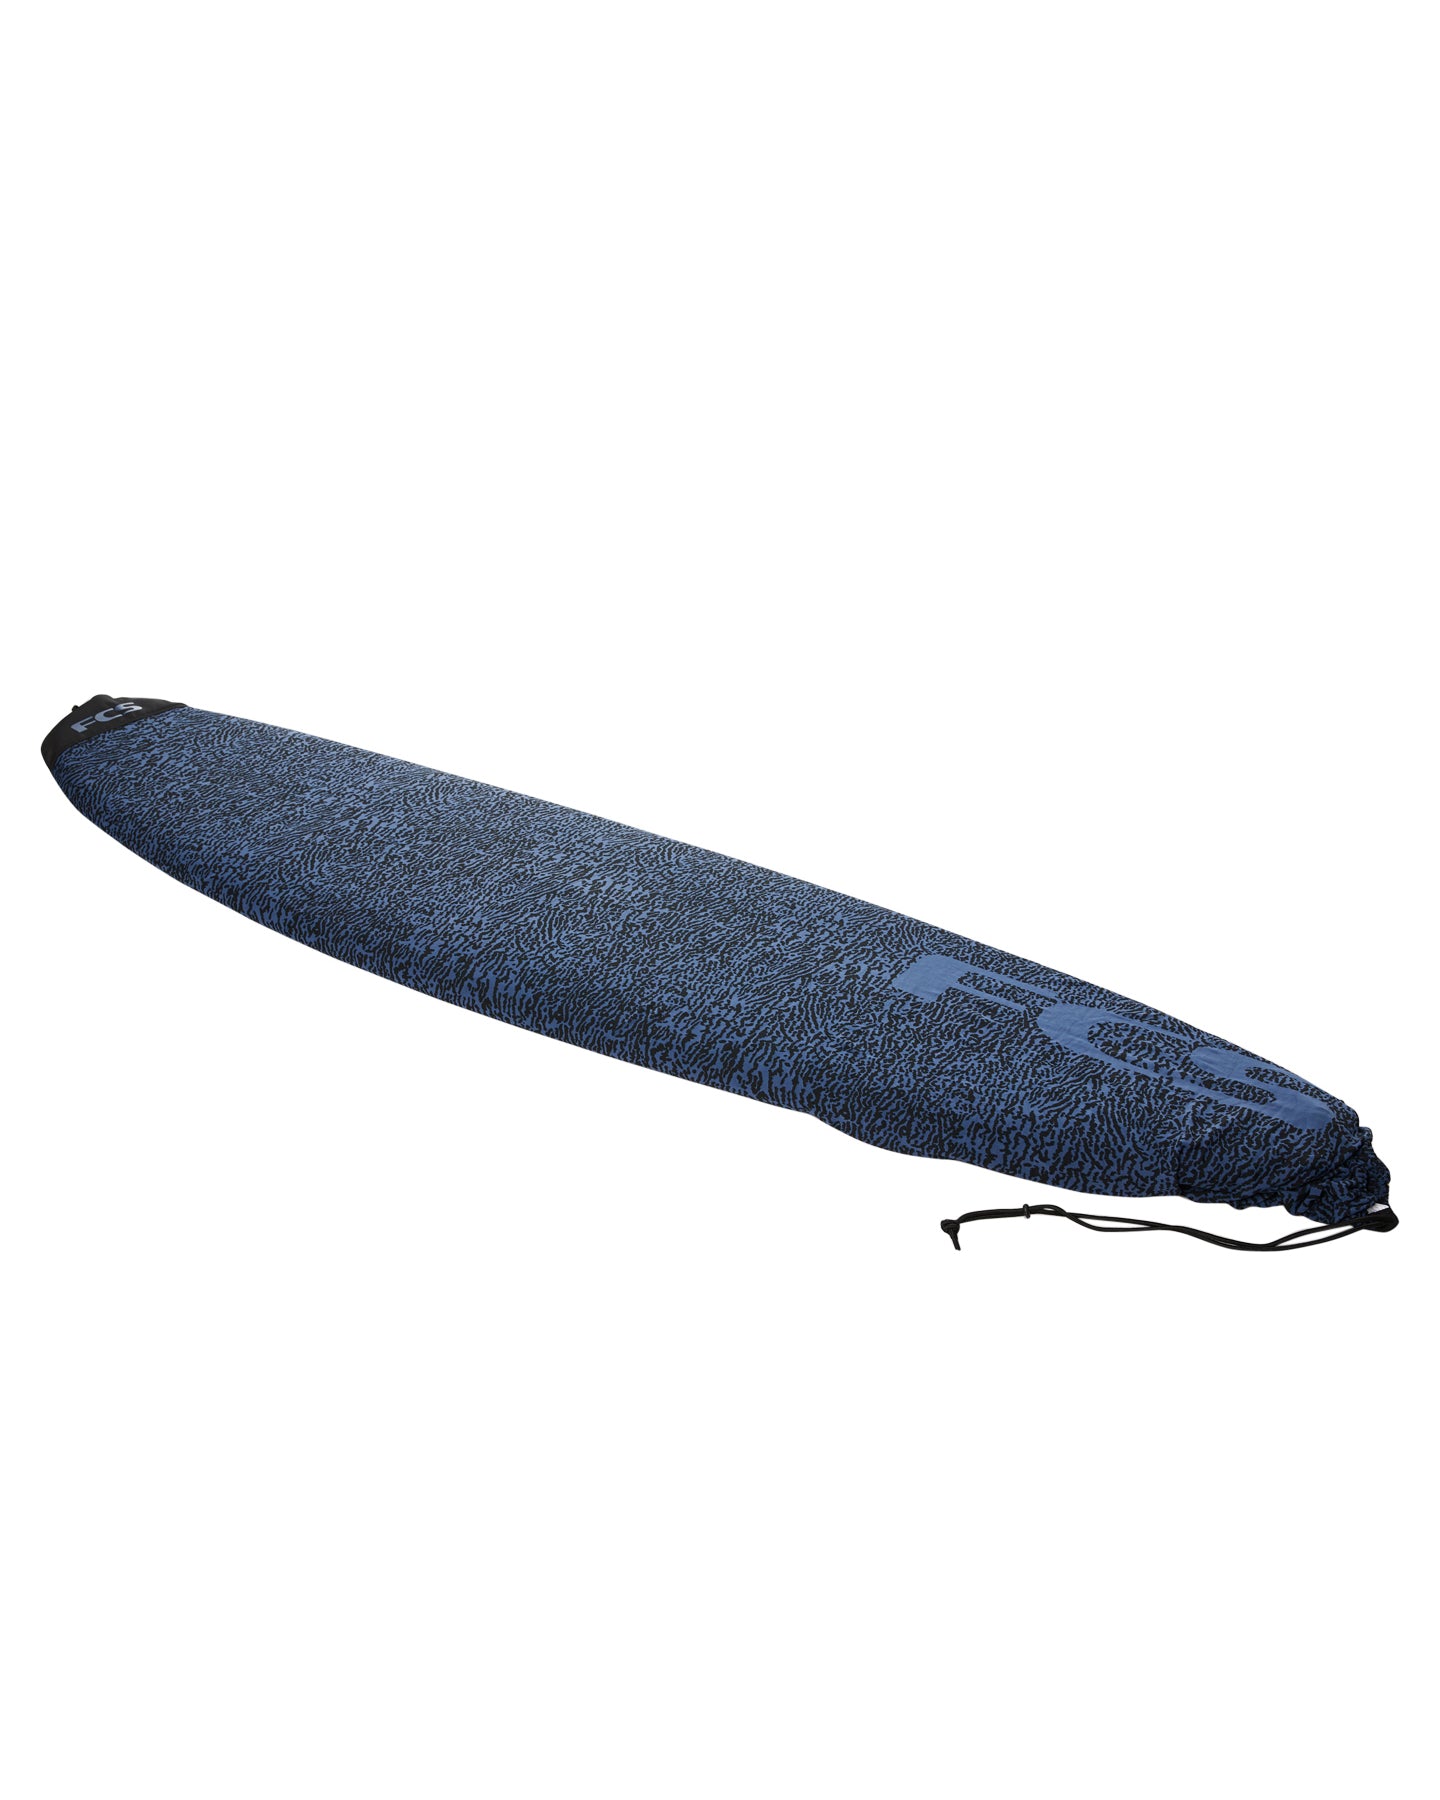 FCS Longboard Stretch Cover Stone Blue 9ft0in